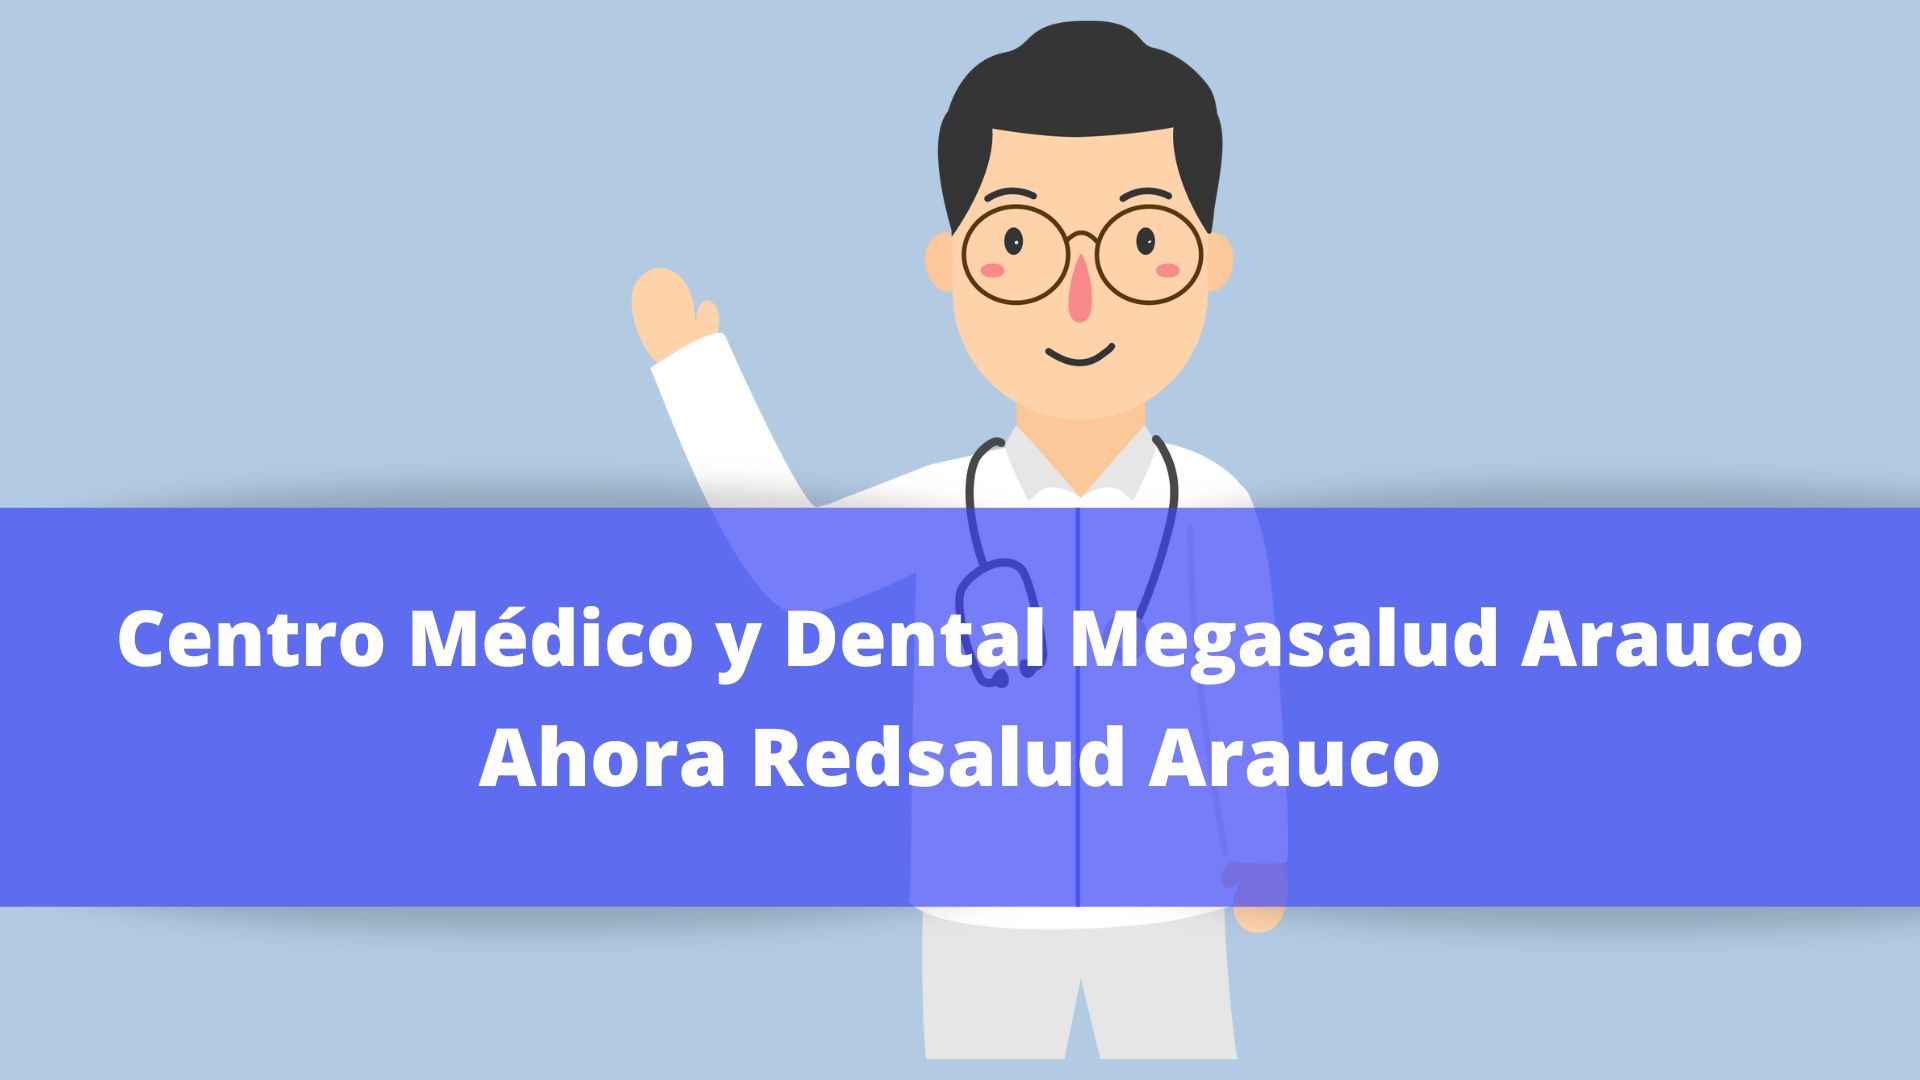 Centro Médico y Dental RedSalud Arauco